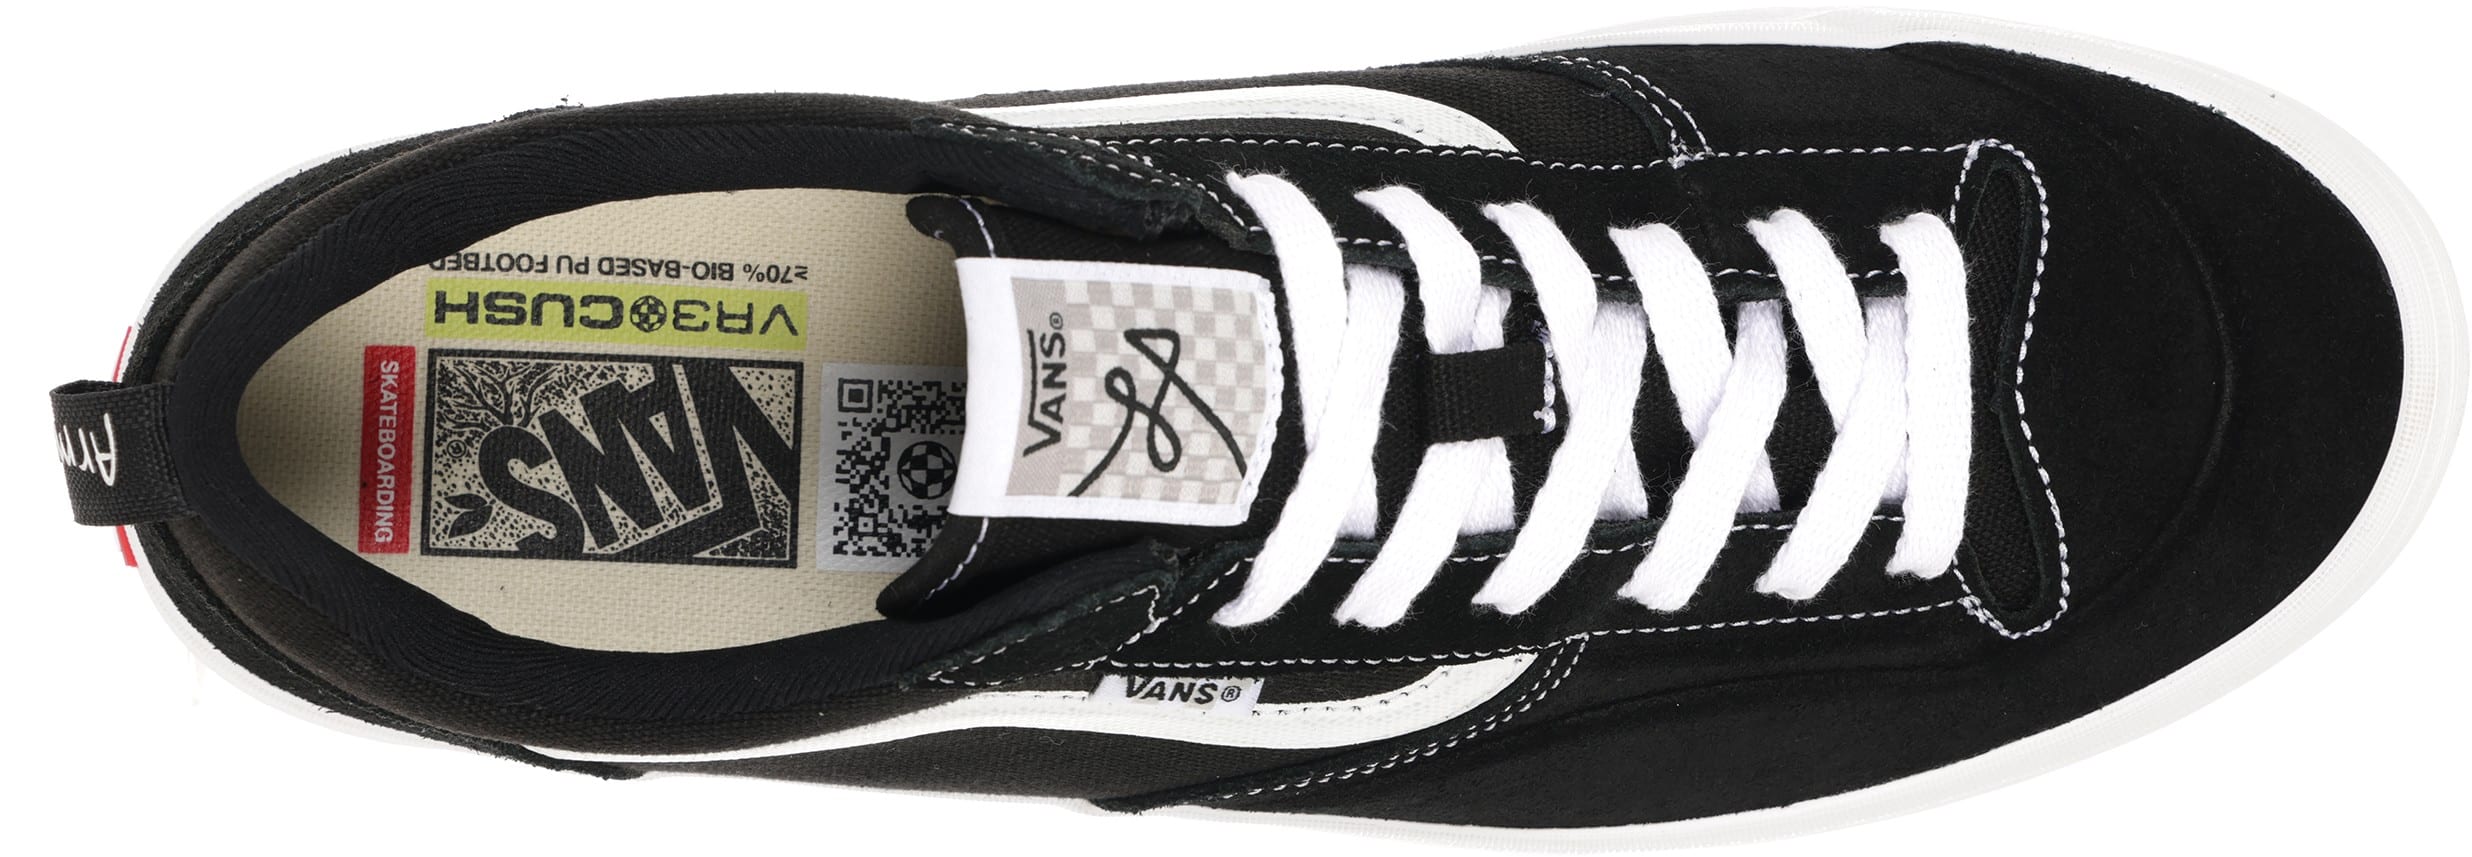 Vans The Lizzie Low Pro Skate Shoes - black/white | Tactics